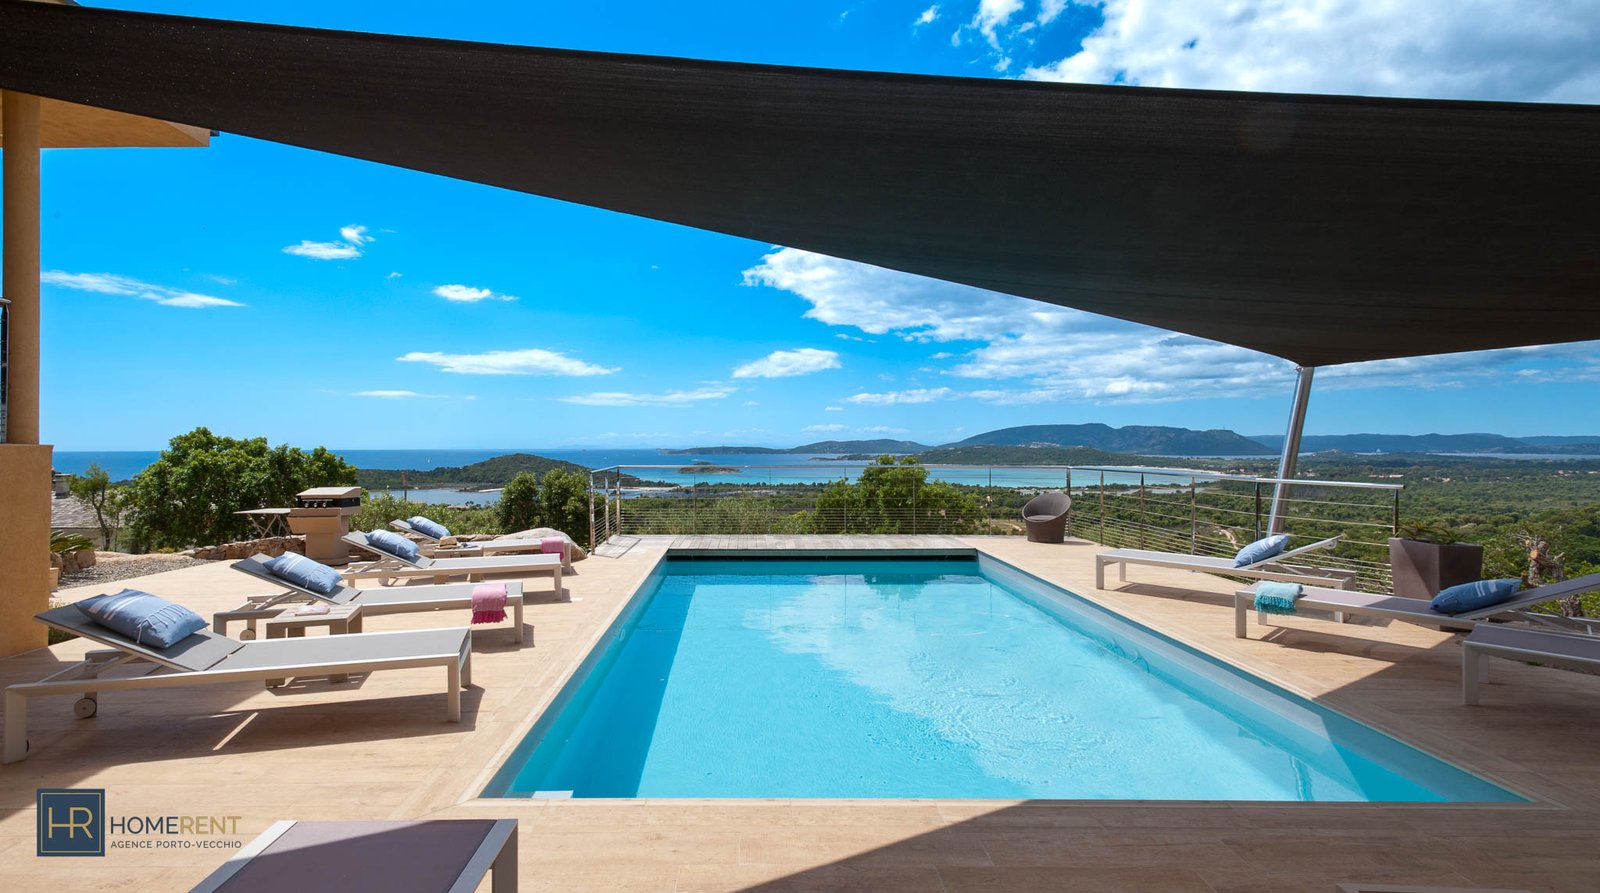 Location villa vue mer à Porto-vecchio avec piscine chauffée proche plage Saint Cyprien